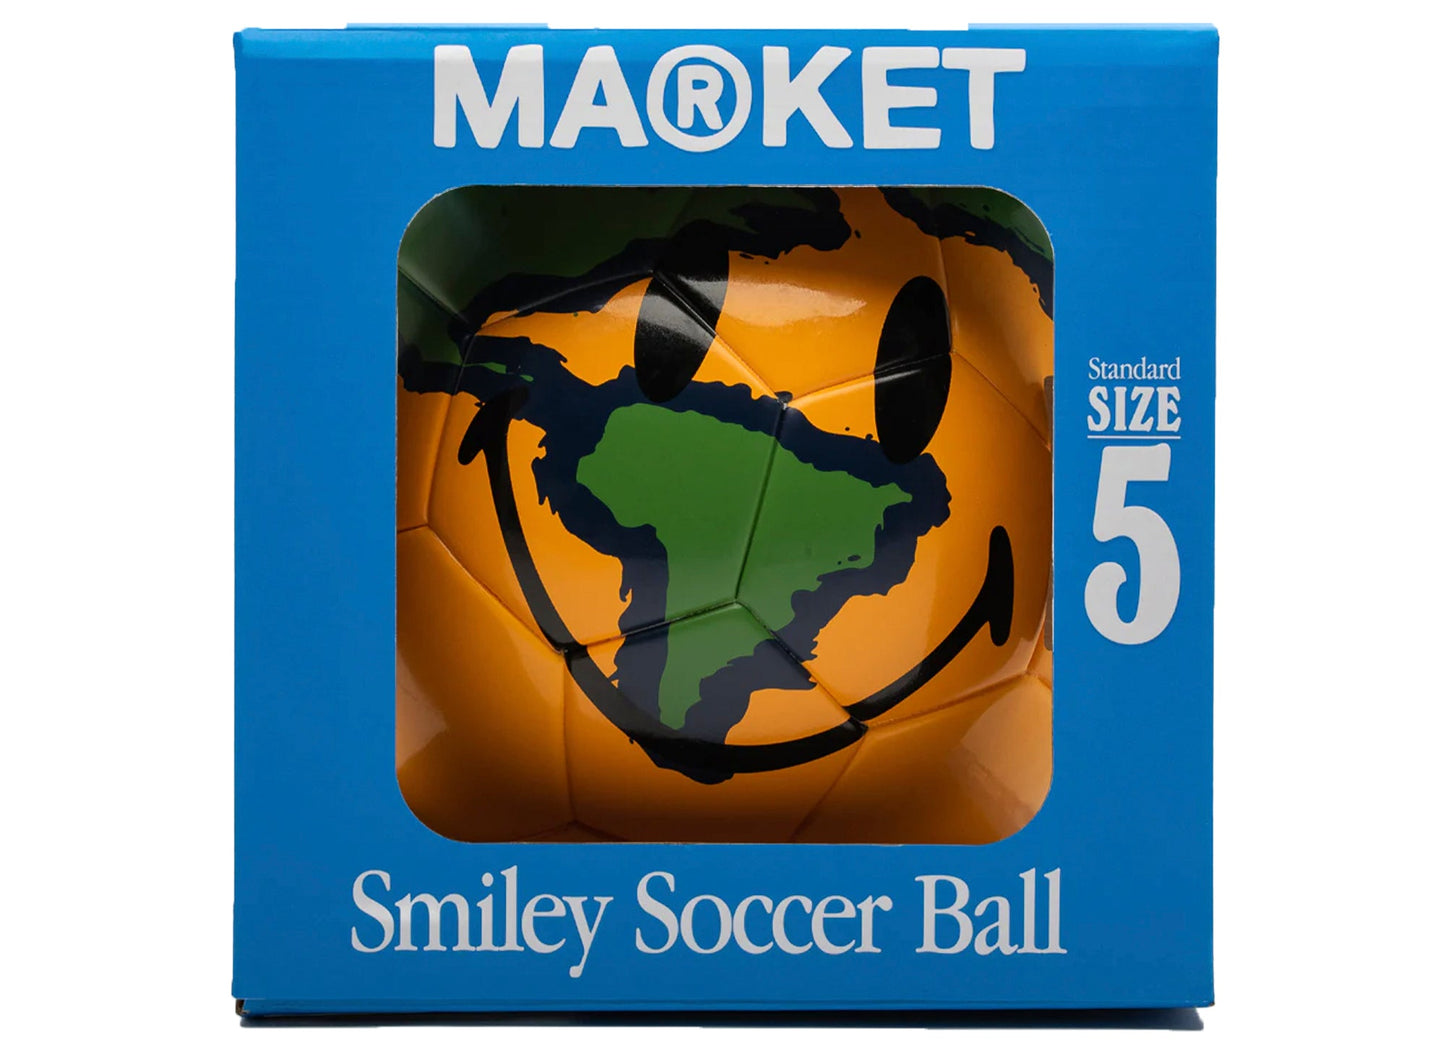 Market Kingston Soccer Ball